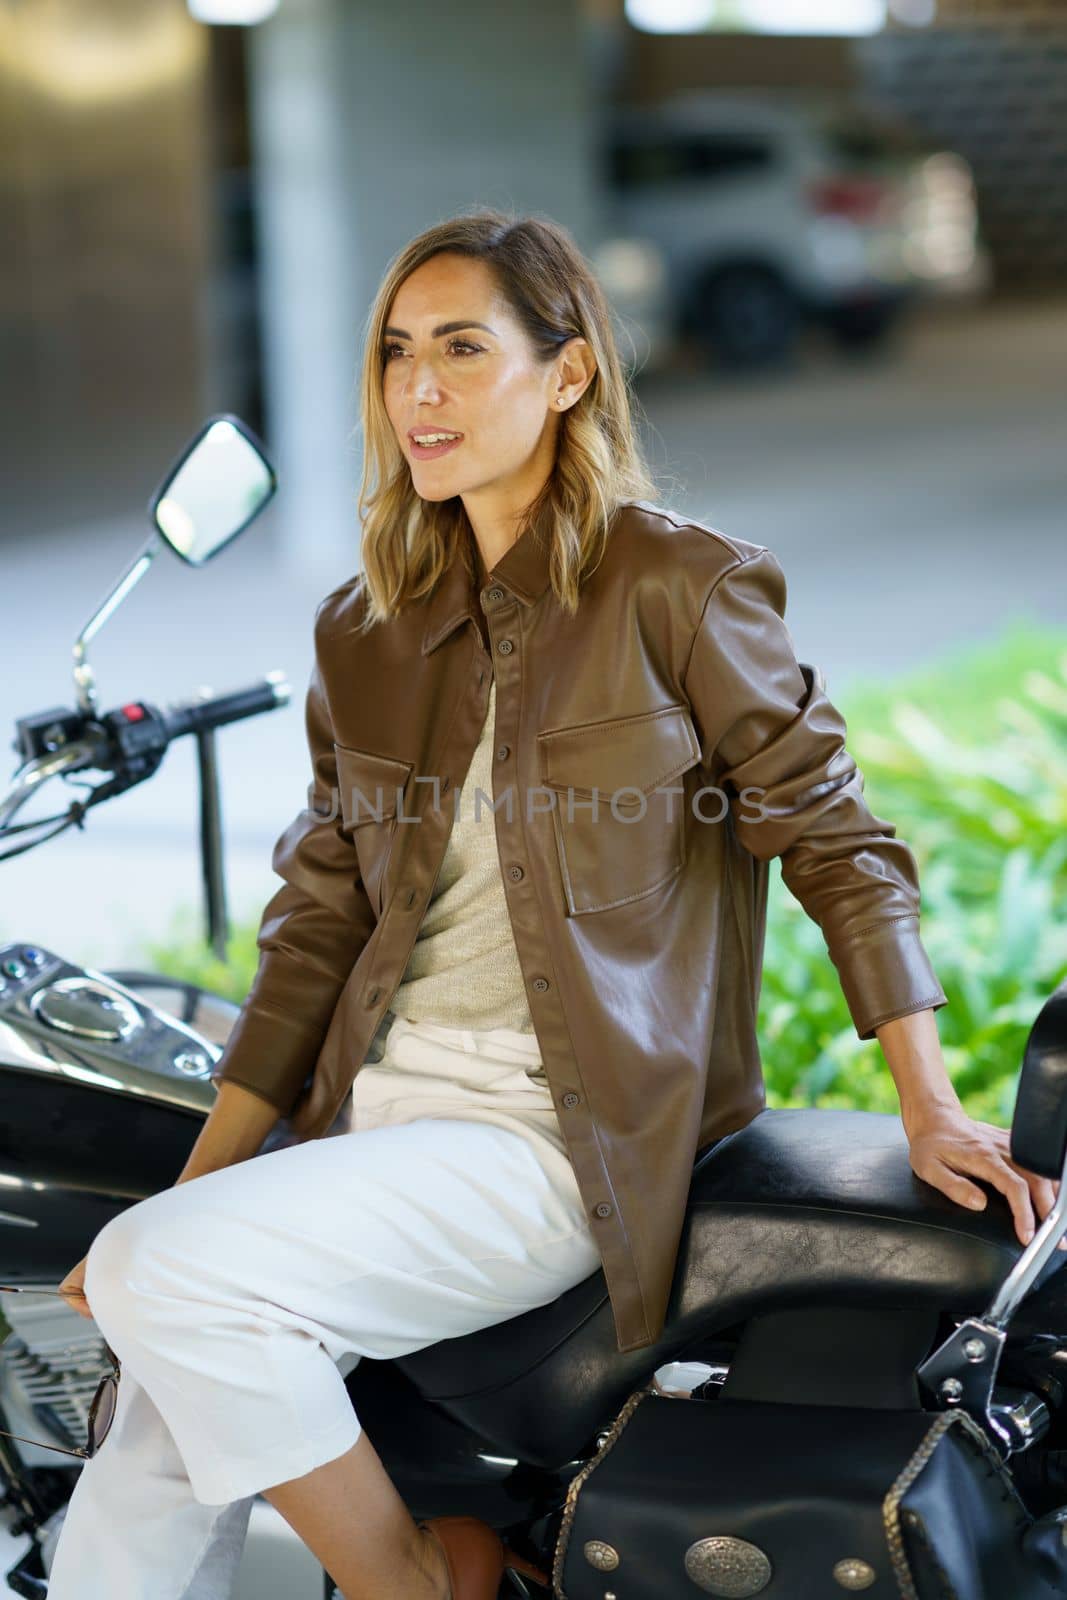 Stylish woman sitting on motorbike by javiindy